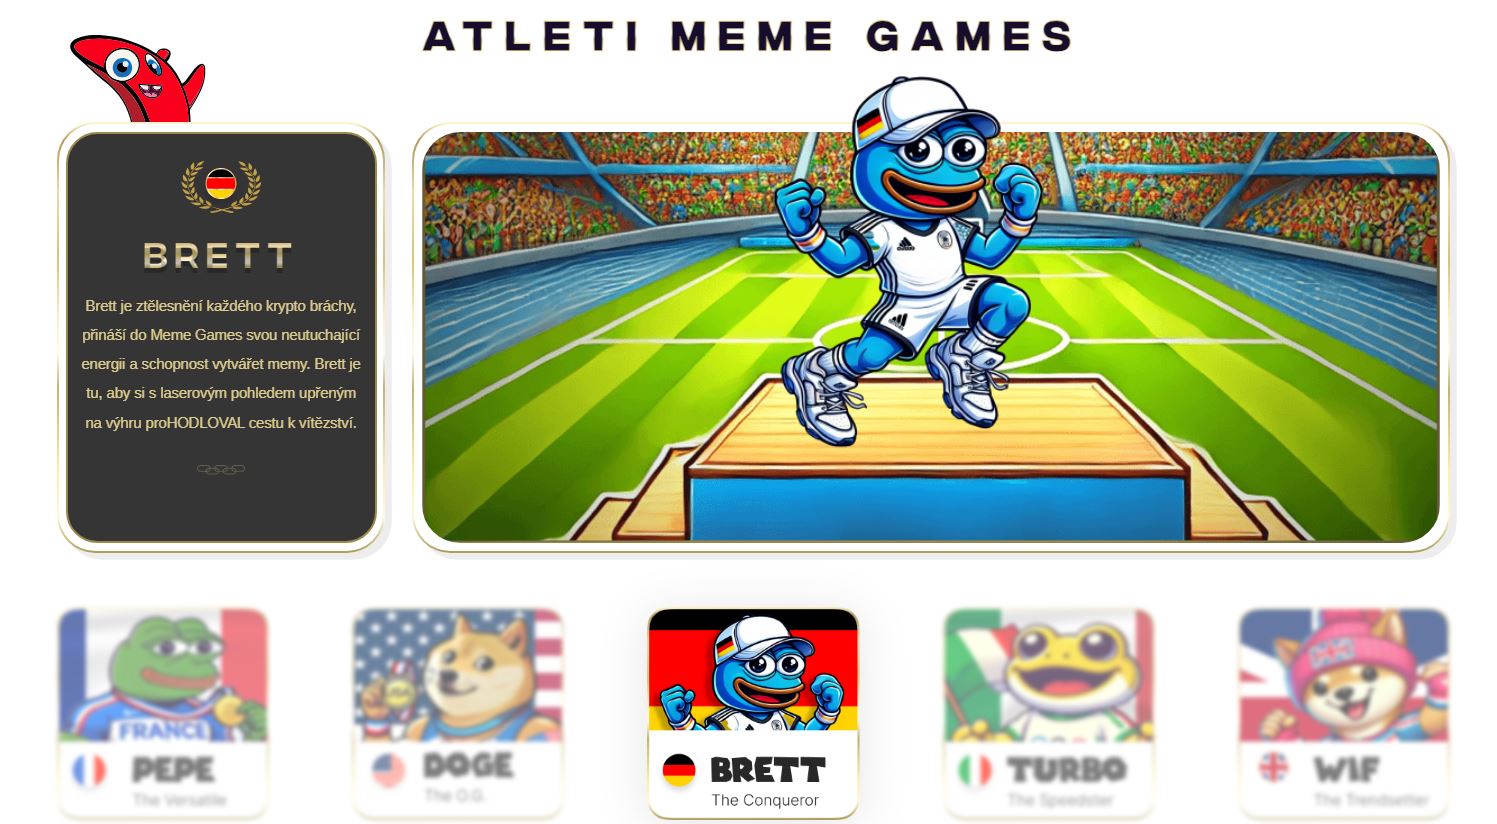 Atleti, kteří jsou součástí nejznámější kryptoměny Meme Games